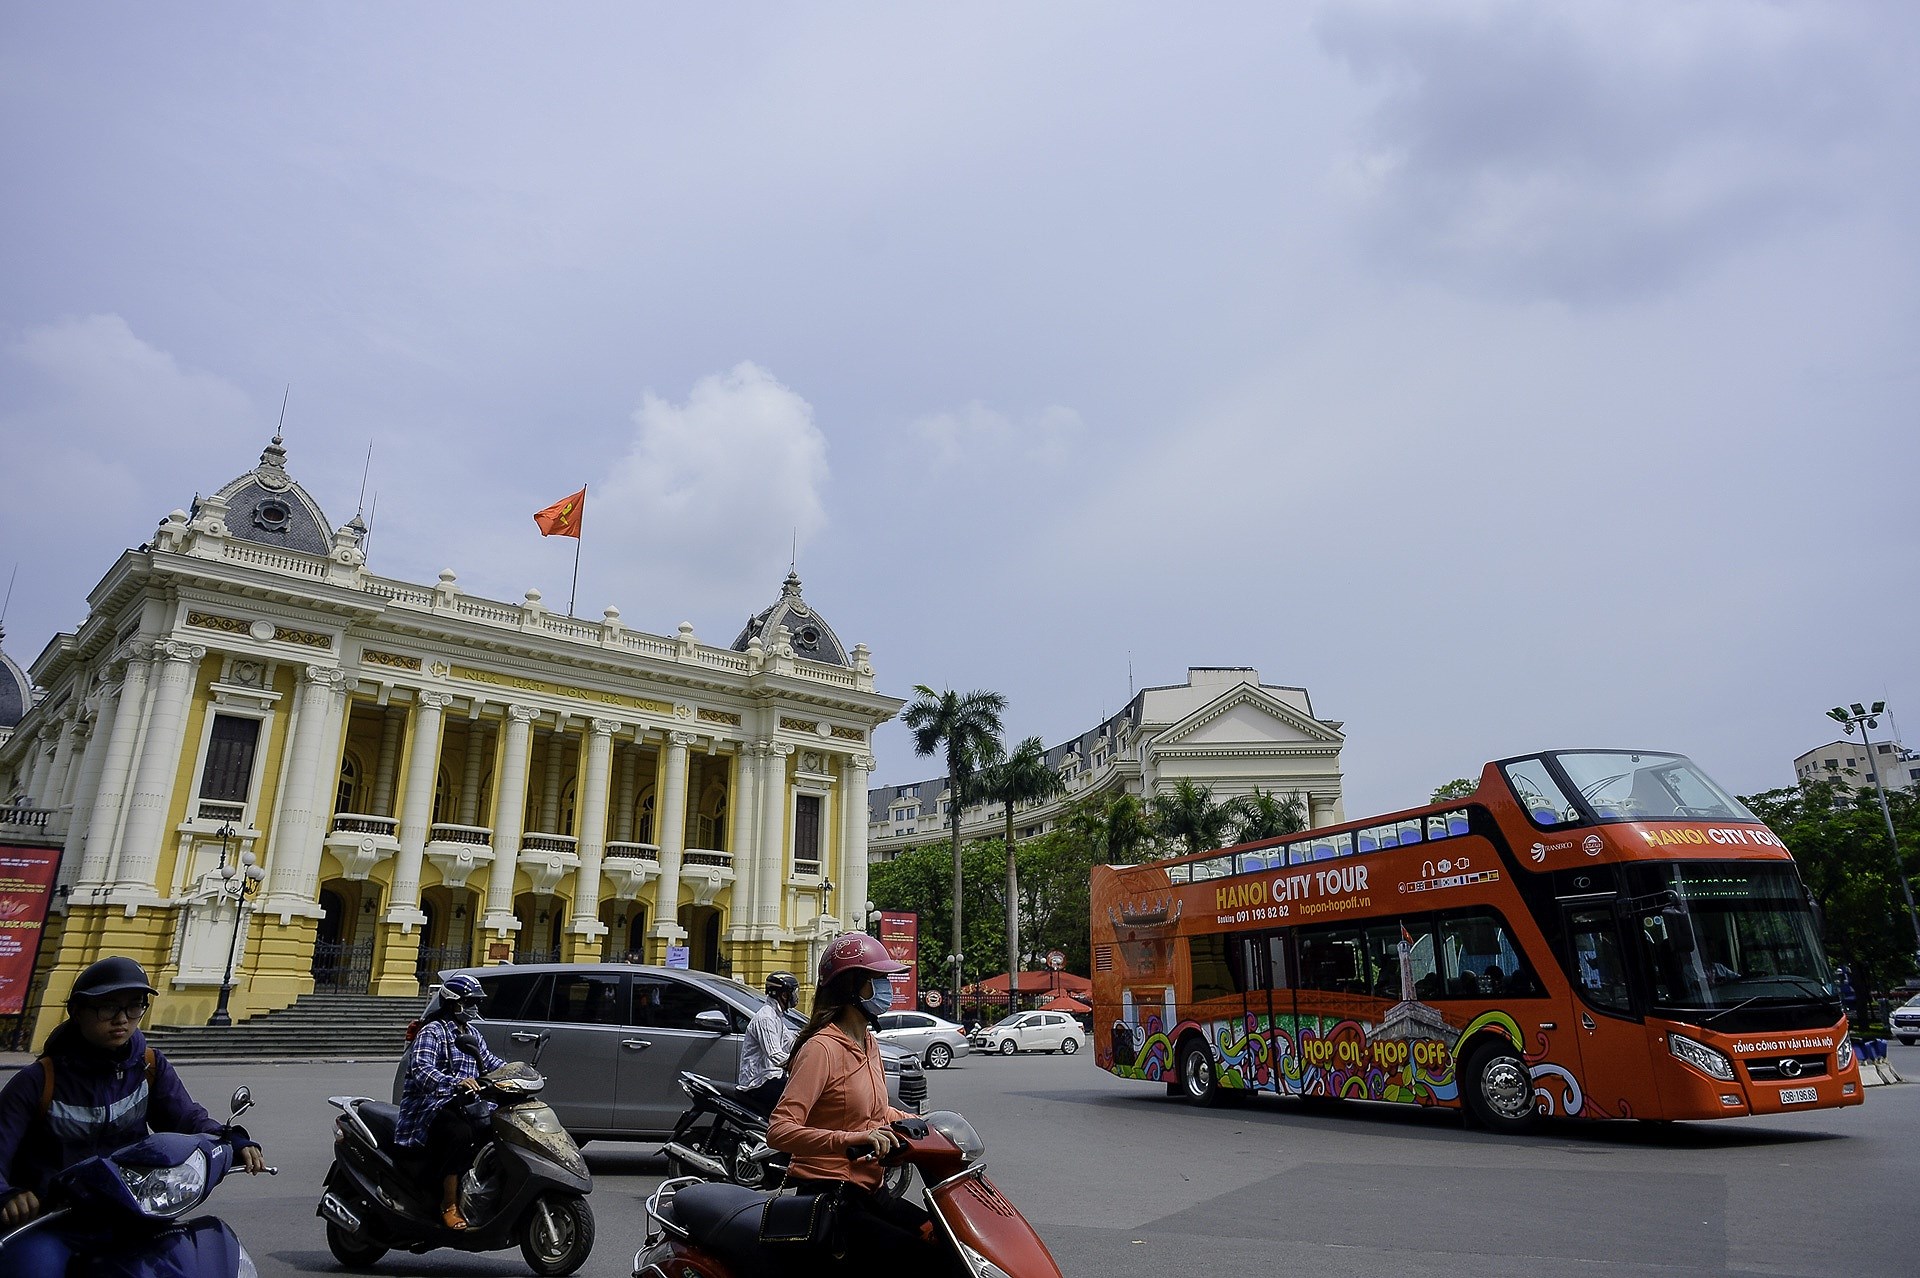 Decouvrir Hanoi a partir des bus a imperiale hinh anh 1